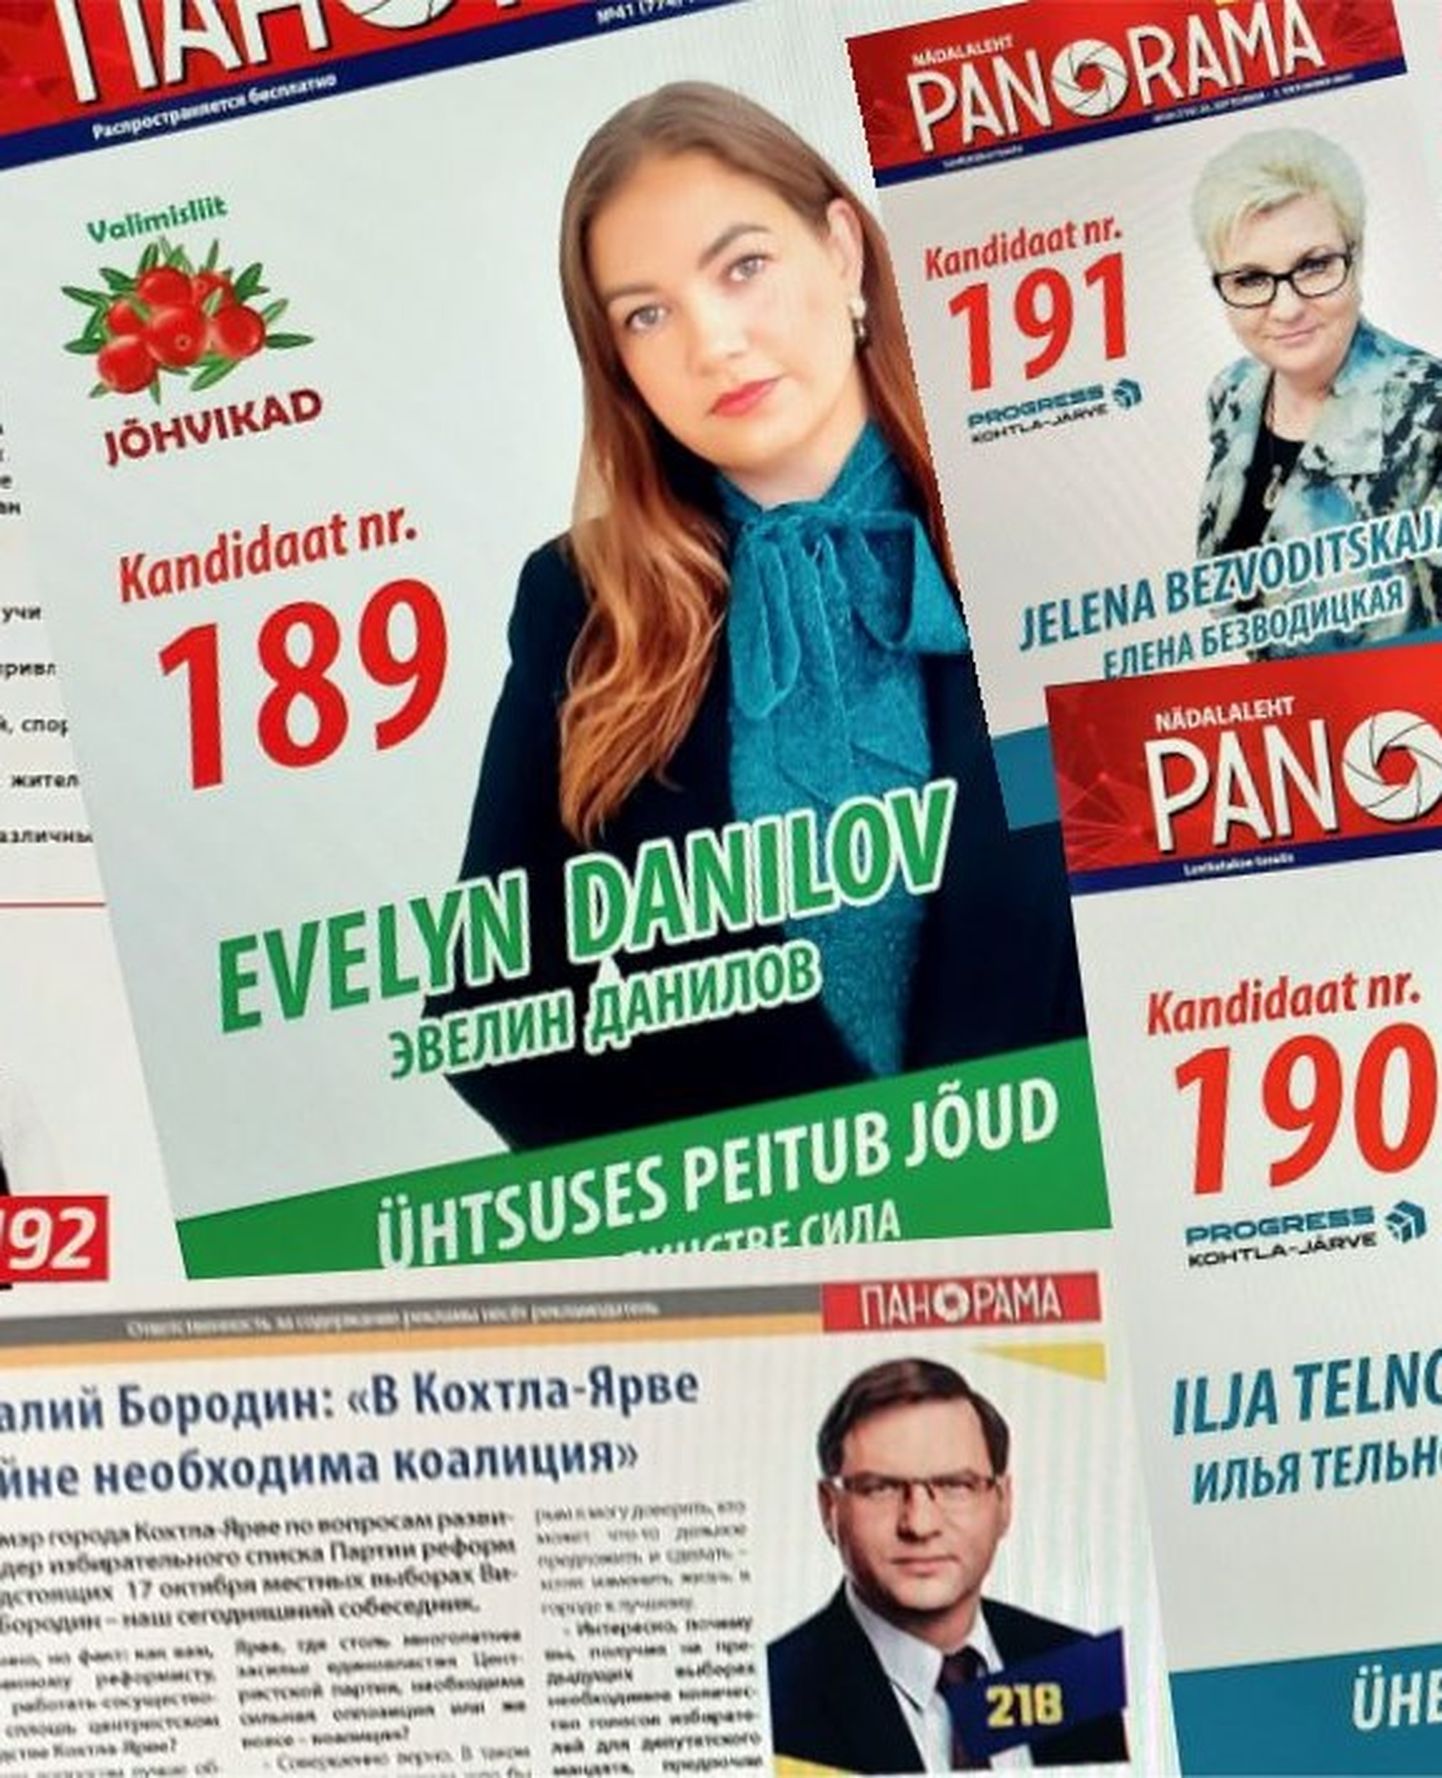 Valimisliit Jõhvikad peab tagastama reklaamlehe Panorama väljaandjale firmale N&V 6903 euro suuruse keelatud annetuse, kuid valimisliit kavatseb selle ettekirjutuse vaidlustada.